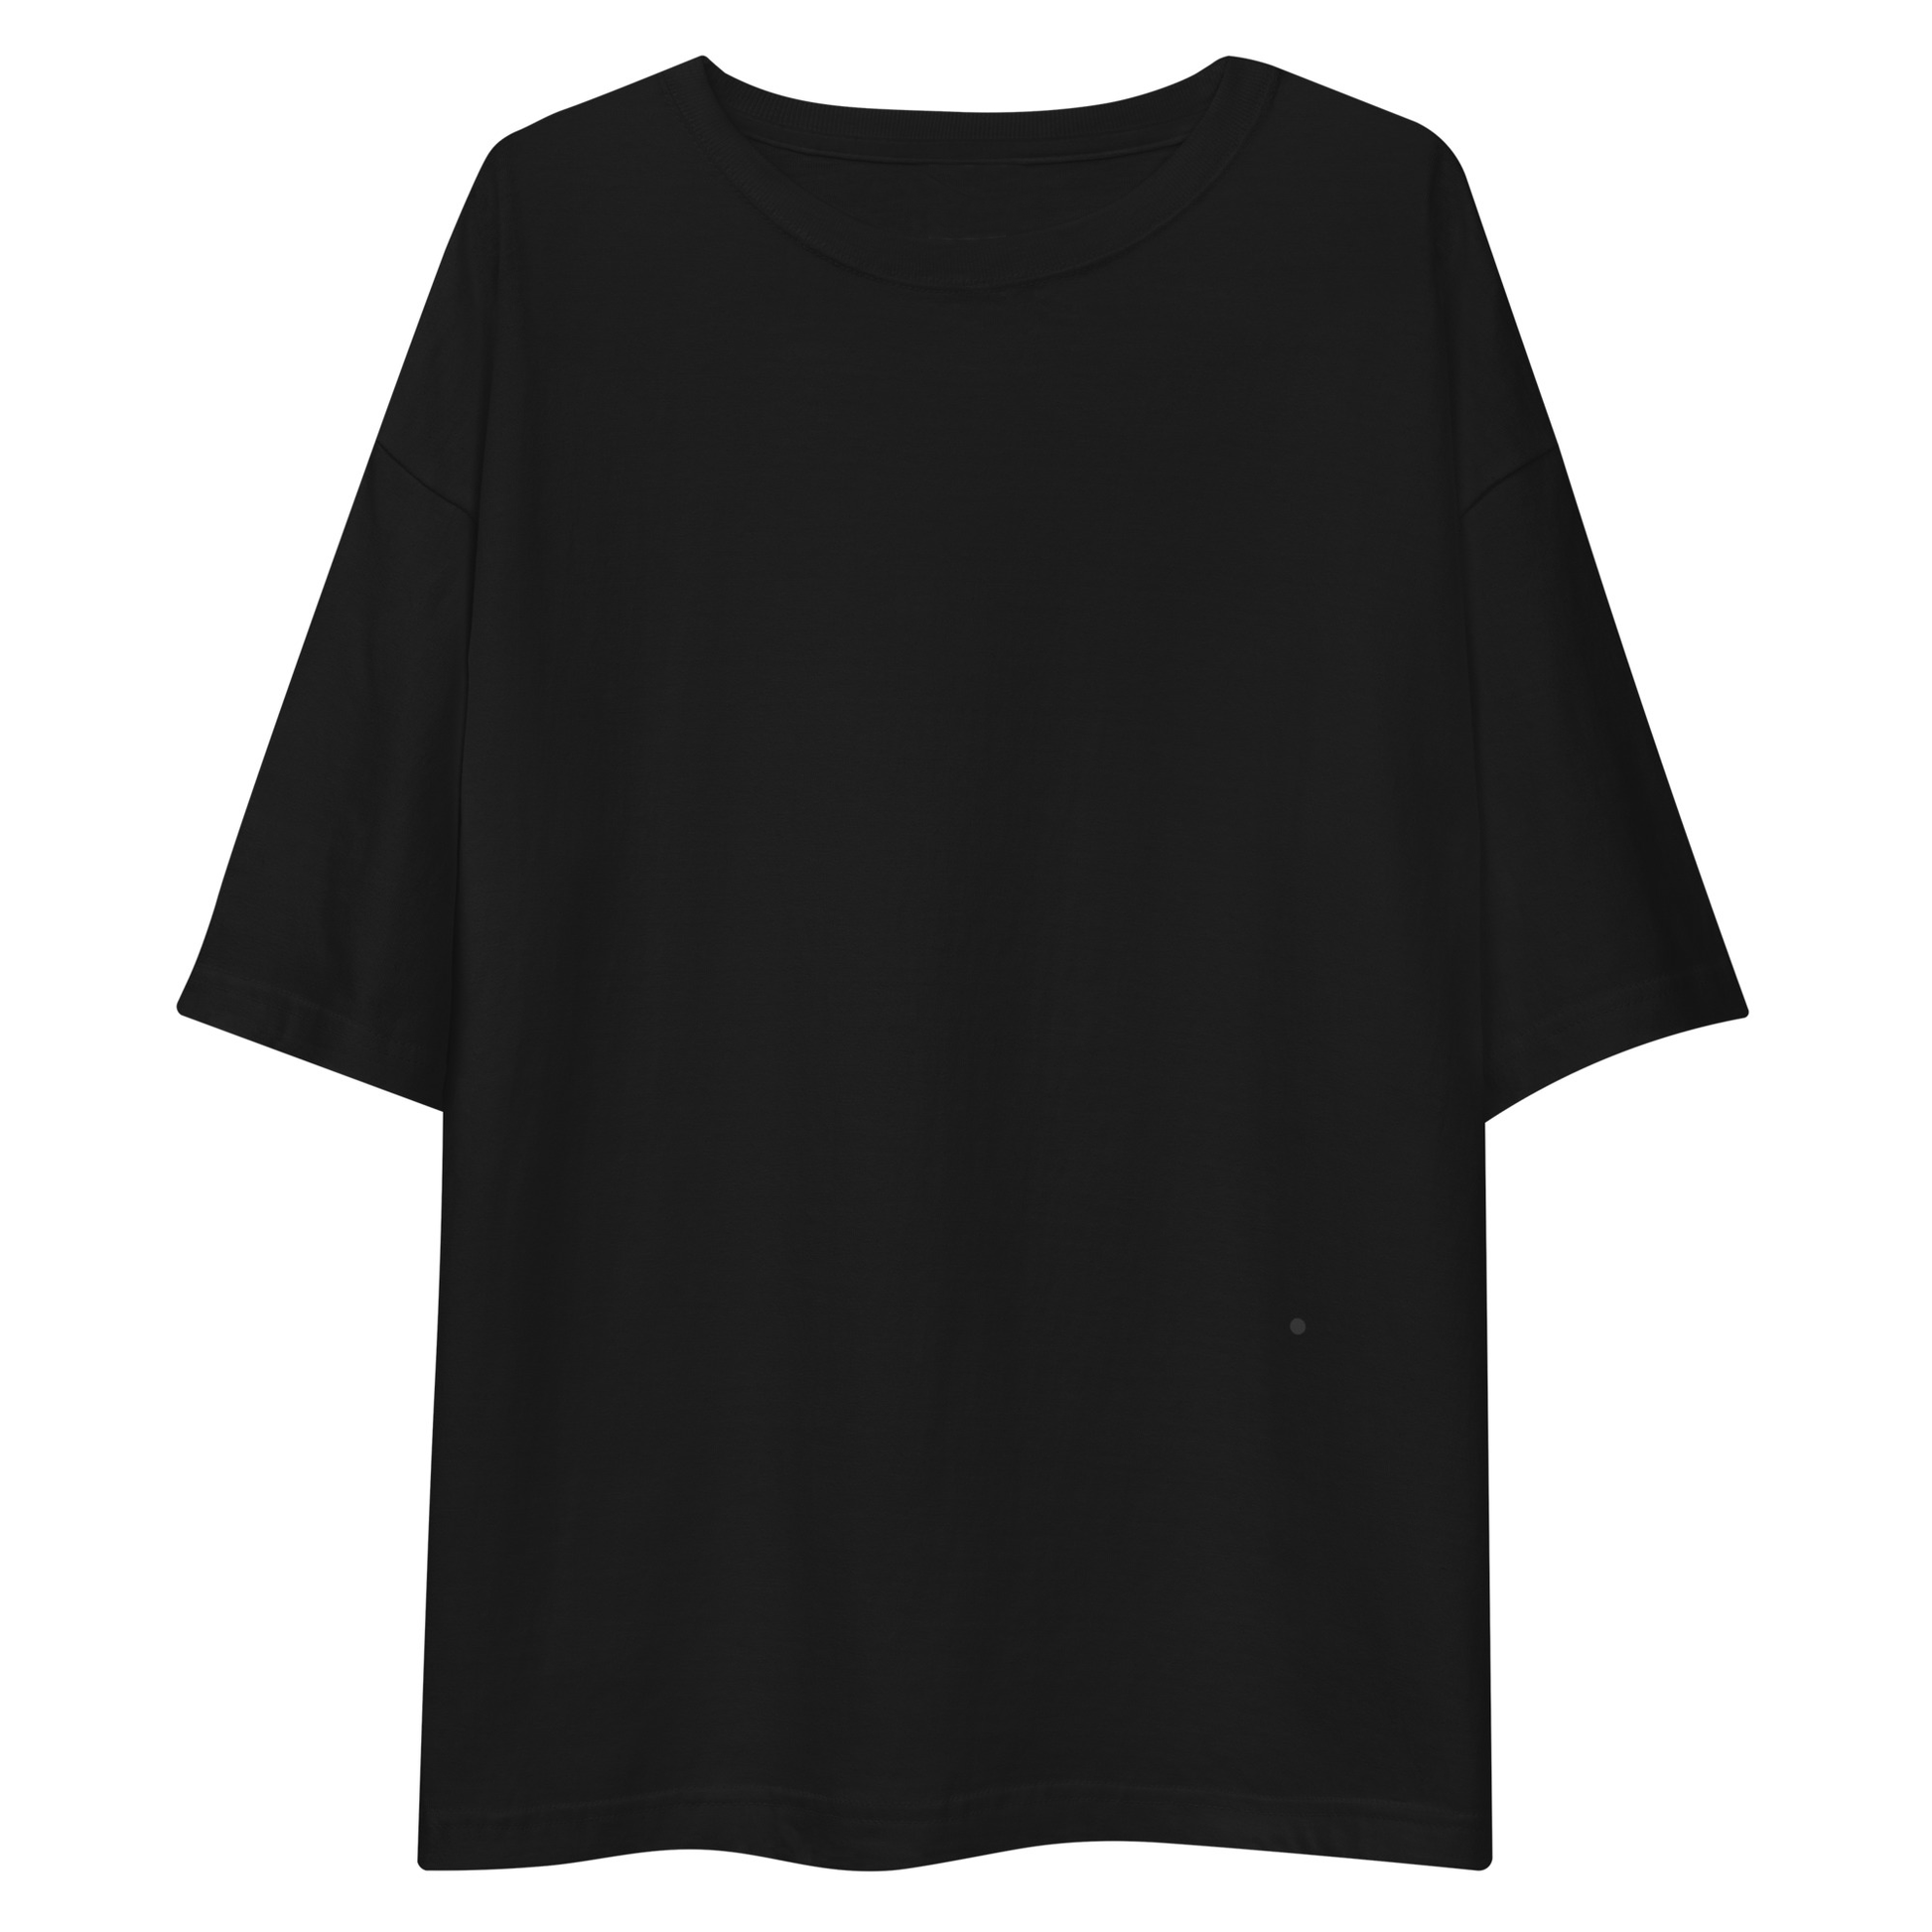 Playera Negra Oversize - Elegancia y calidad en nuestra insignia. Descubre la perfección del algodón premium importado. envíos a Guatemala